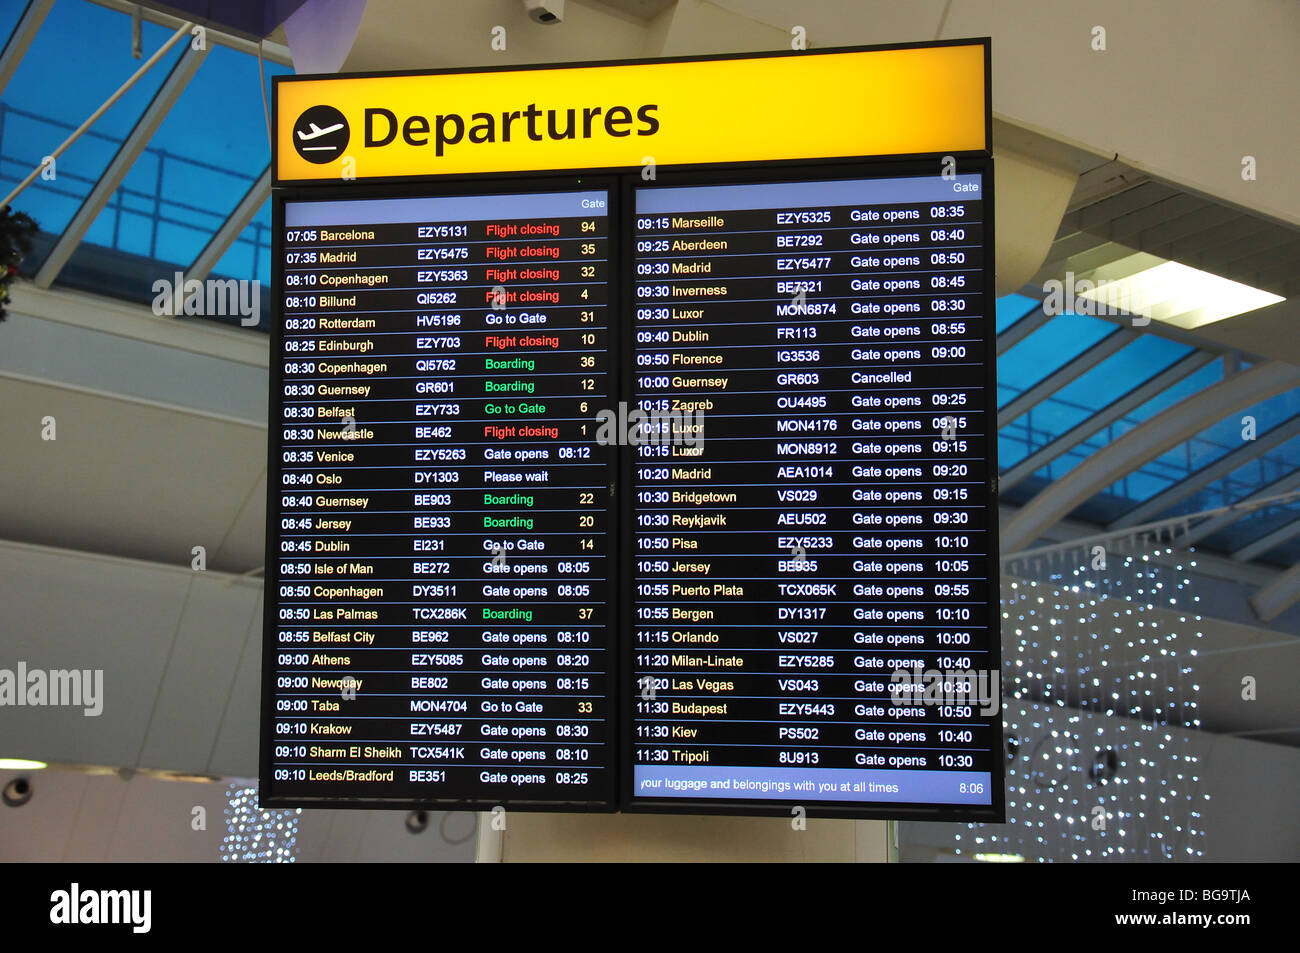 Elettronica scheda di partenza nella sala partenze, South Terminal, L' Aeroporto di Gatwick, Crawley, West Sussex, in Inghilterra, Regno Unito Foto Stock